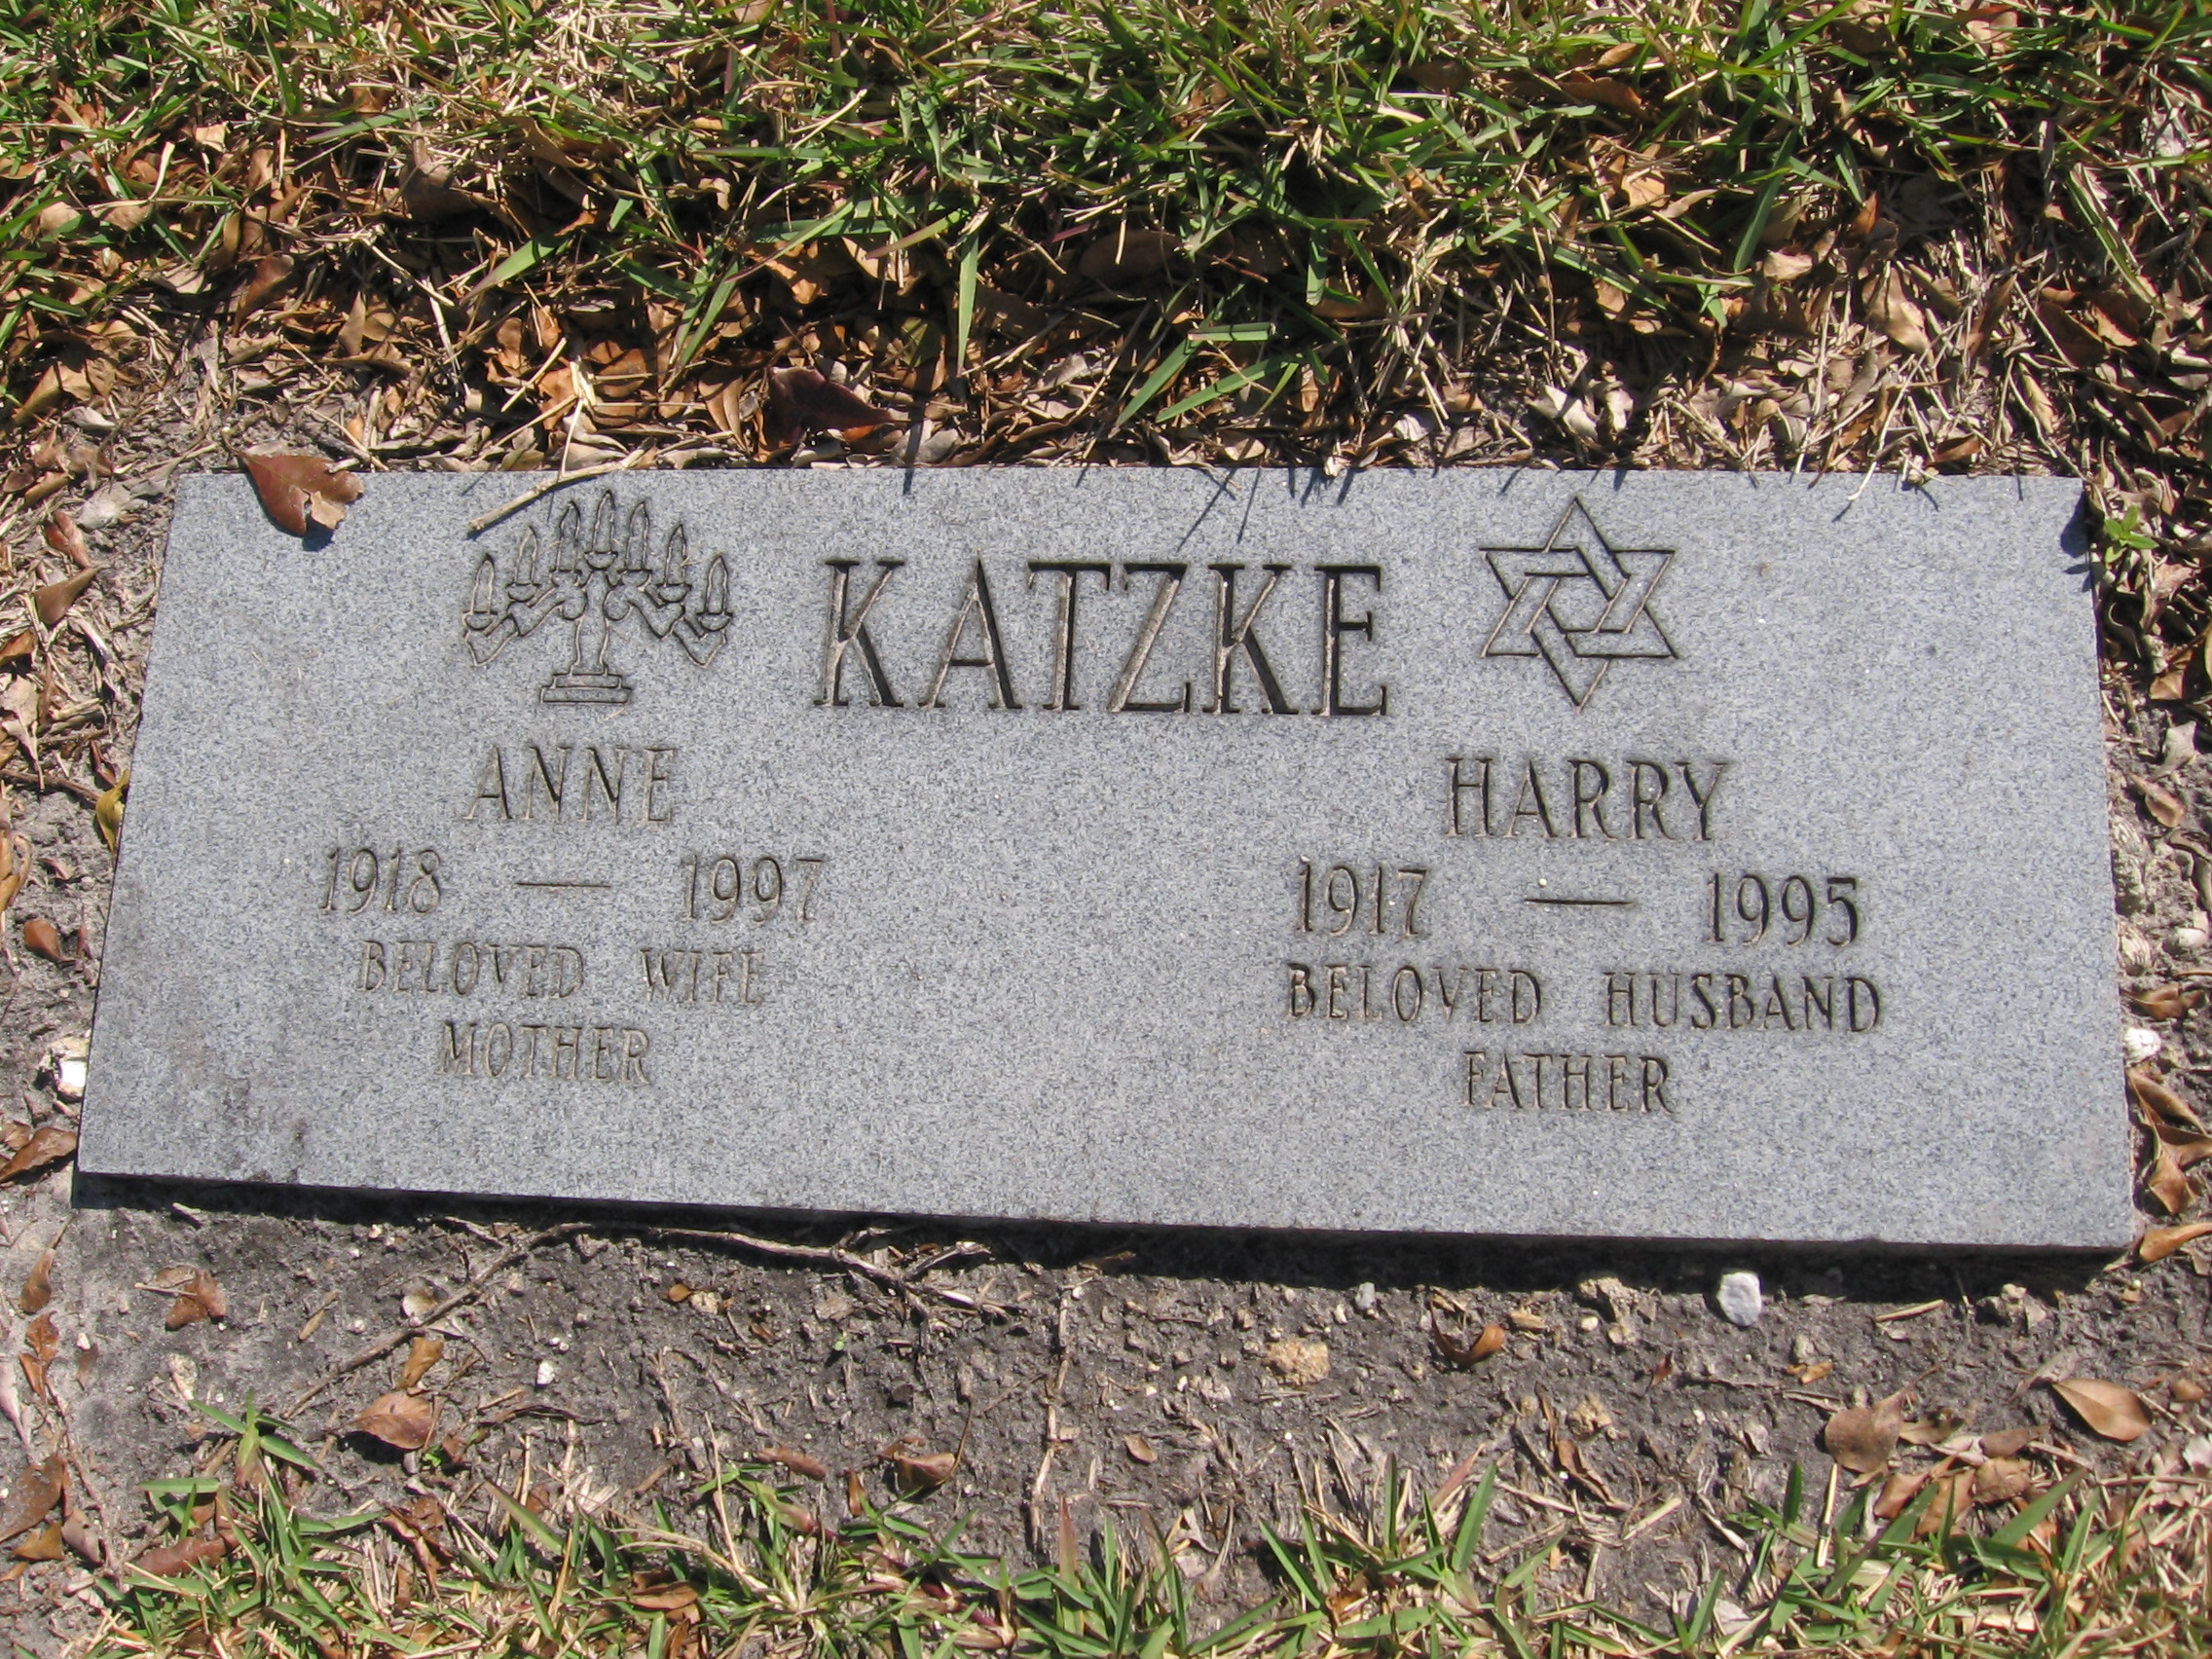 Harry Katzke